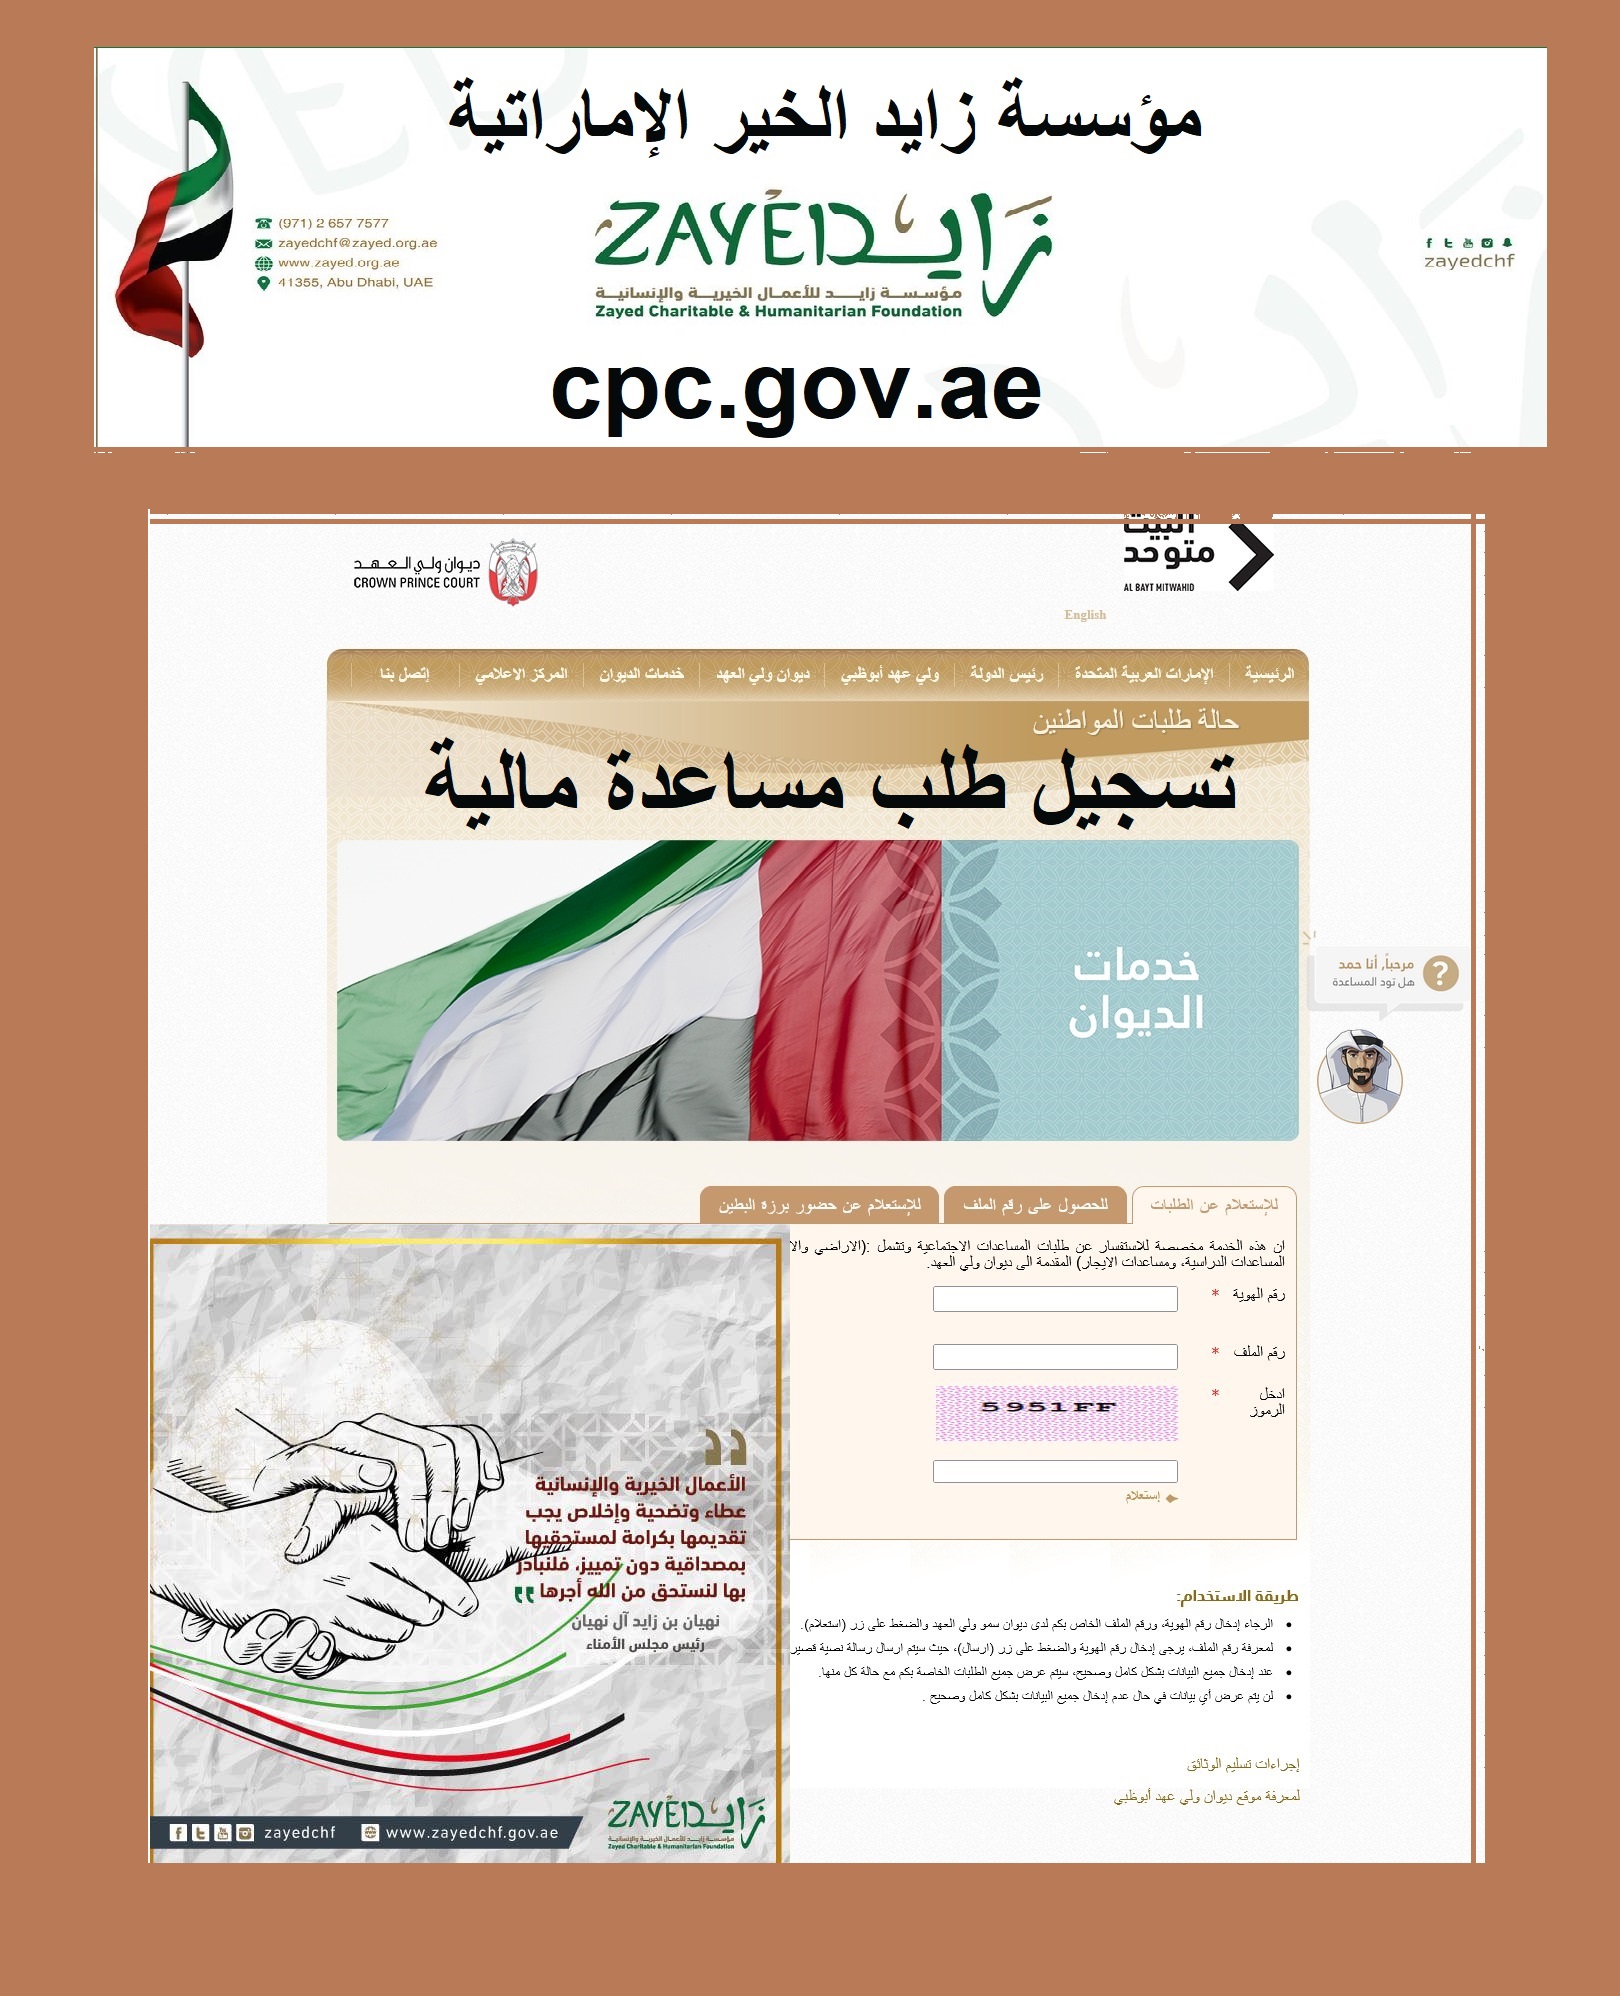 طريقة التسجيل وتقديم طلب مساعدة مالية من مؤسسة زايد الخيرية zayedchf.gov.ae الإماراتية